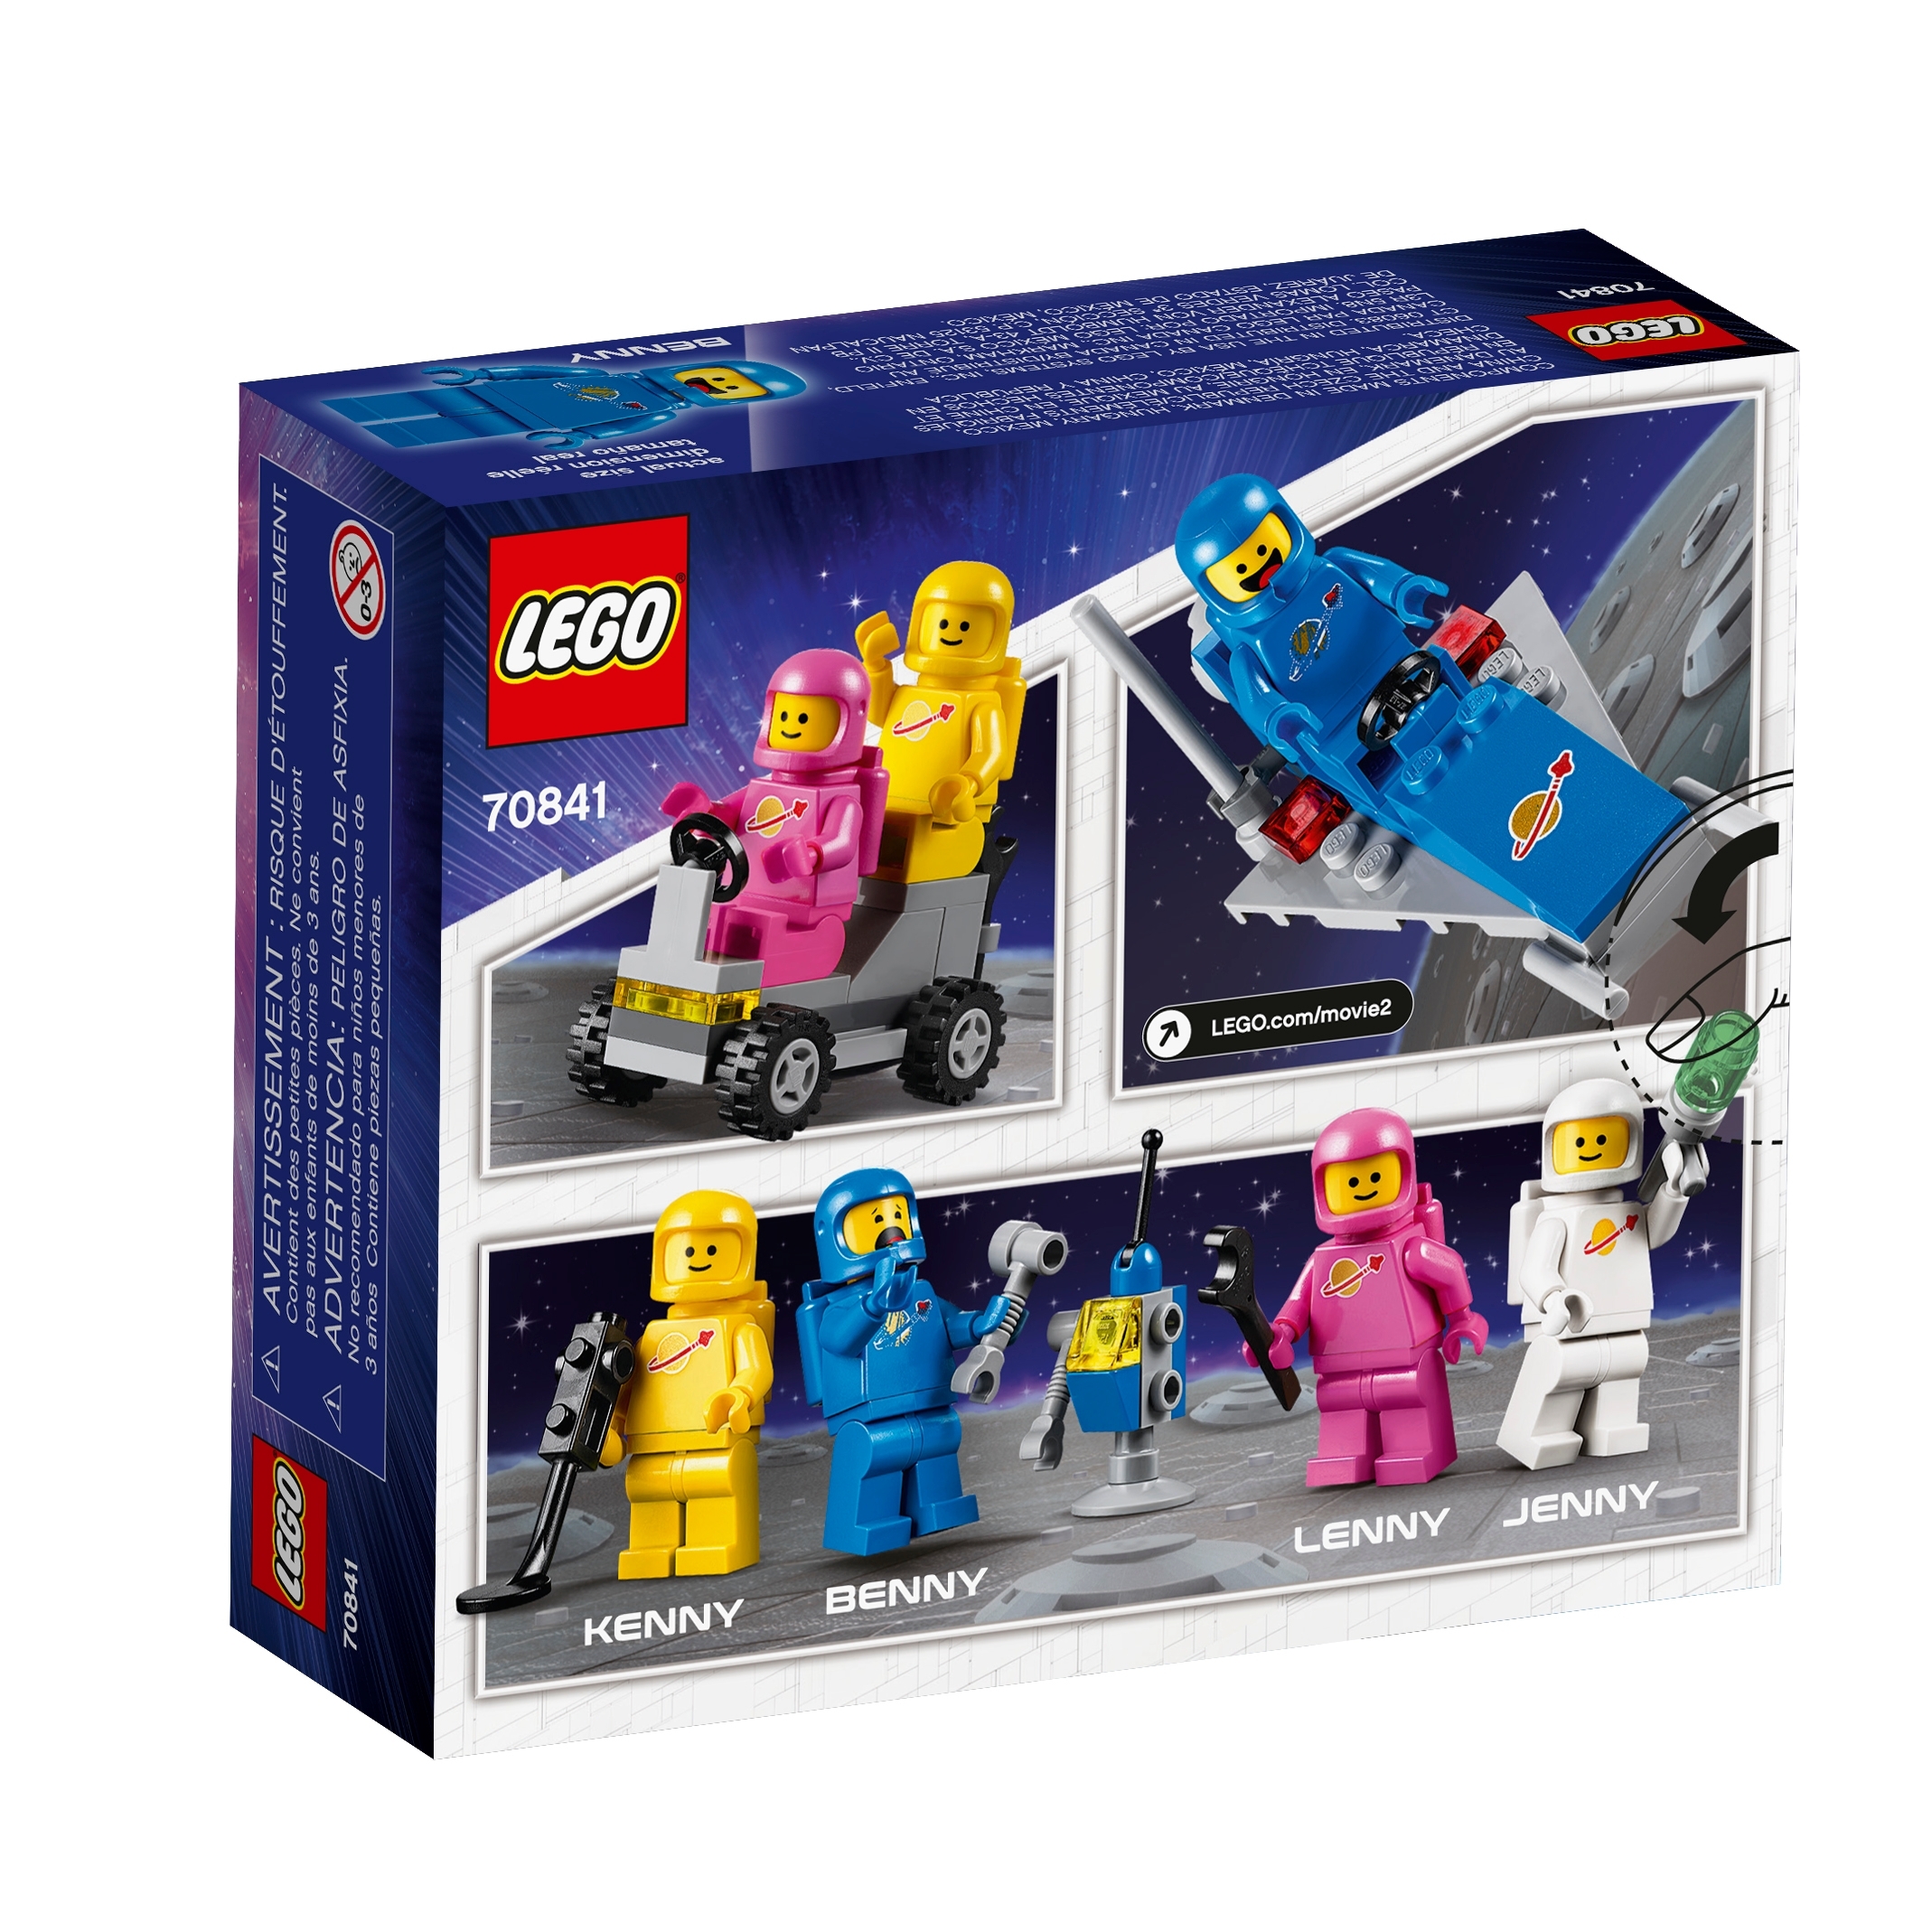 LEGO ® MOVIE 2™ Bennys Weltraum-Team 70841 70822 Einhorn Kittys N1/19 